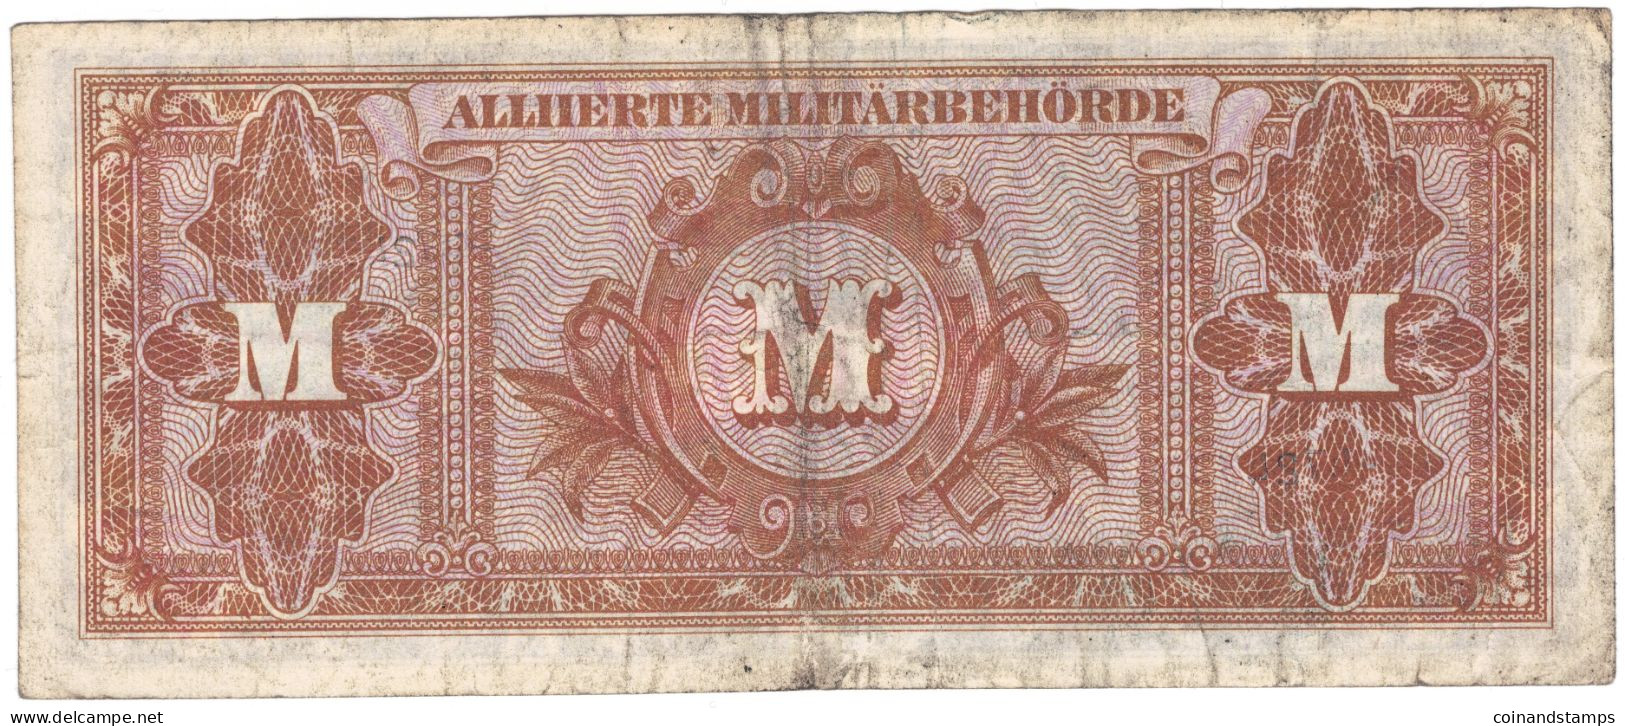 Alliierte Militärbehörde 1944 Lot Mit 3 Banknoten 1,5 Und 100 Mark Rosenberg Nr.201,202,206d, II-III, IV - Collezioni